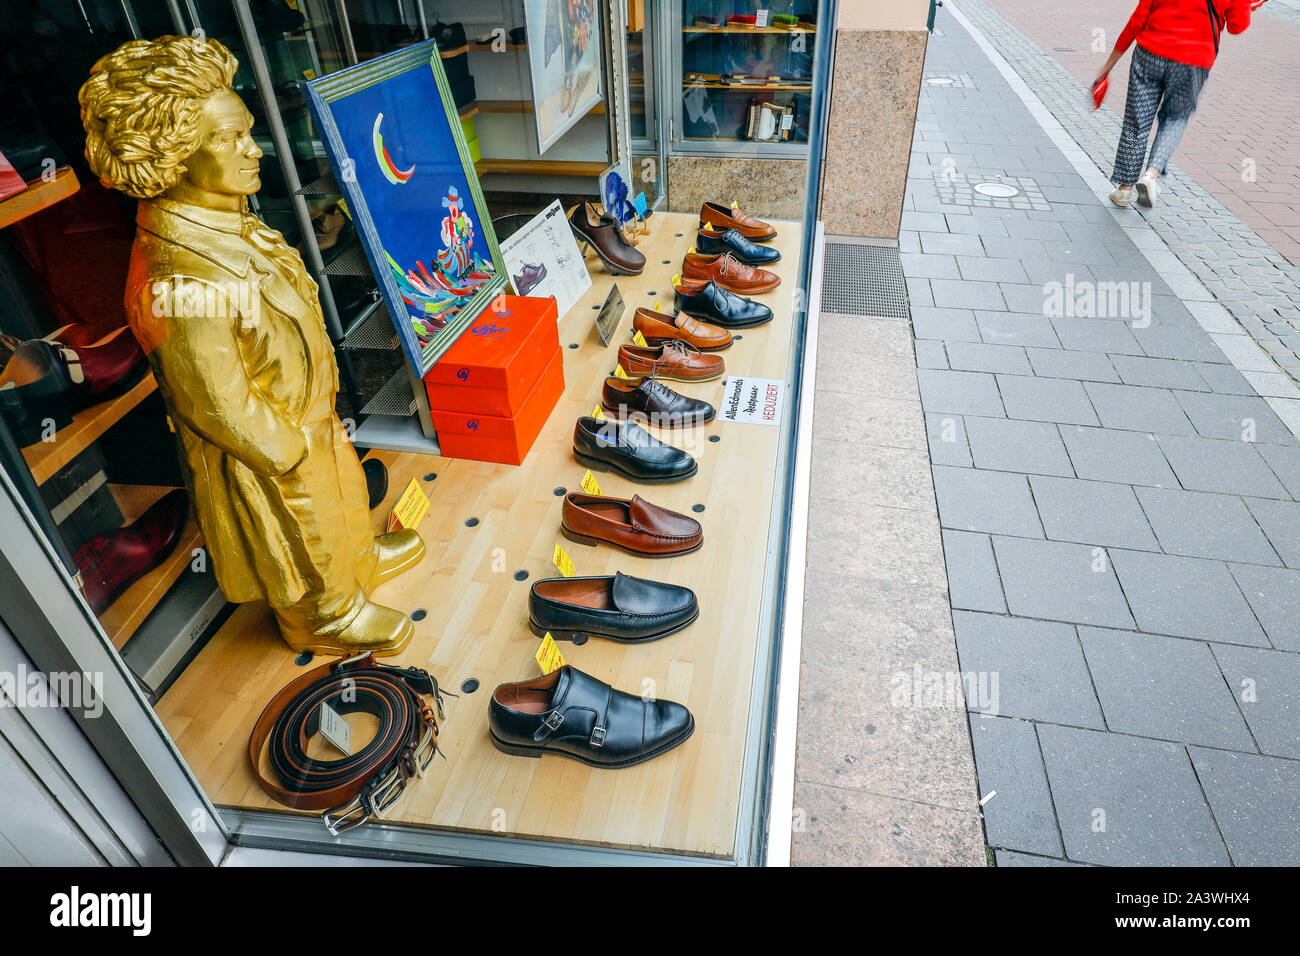 22.09.2019, Bonn, Nordrhein-Westfalen, Deutschland - Beethoven Skulptur im Schaufenster ein Schuhgeschäft. 2020 Bonn feiert Beethovens 250 Birt Stockfoto